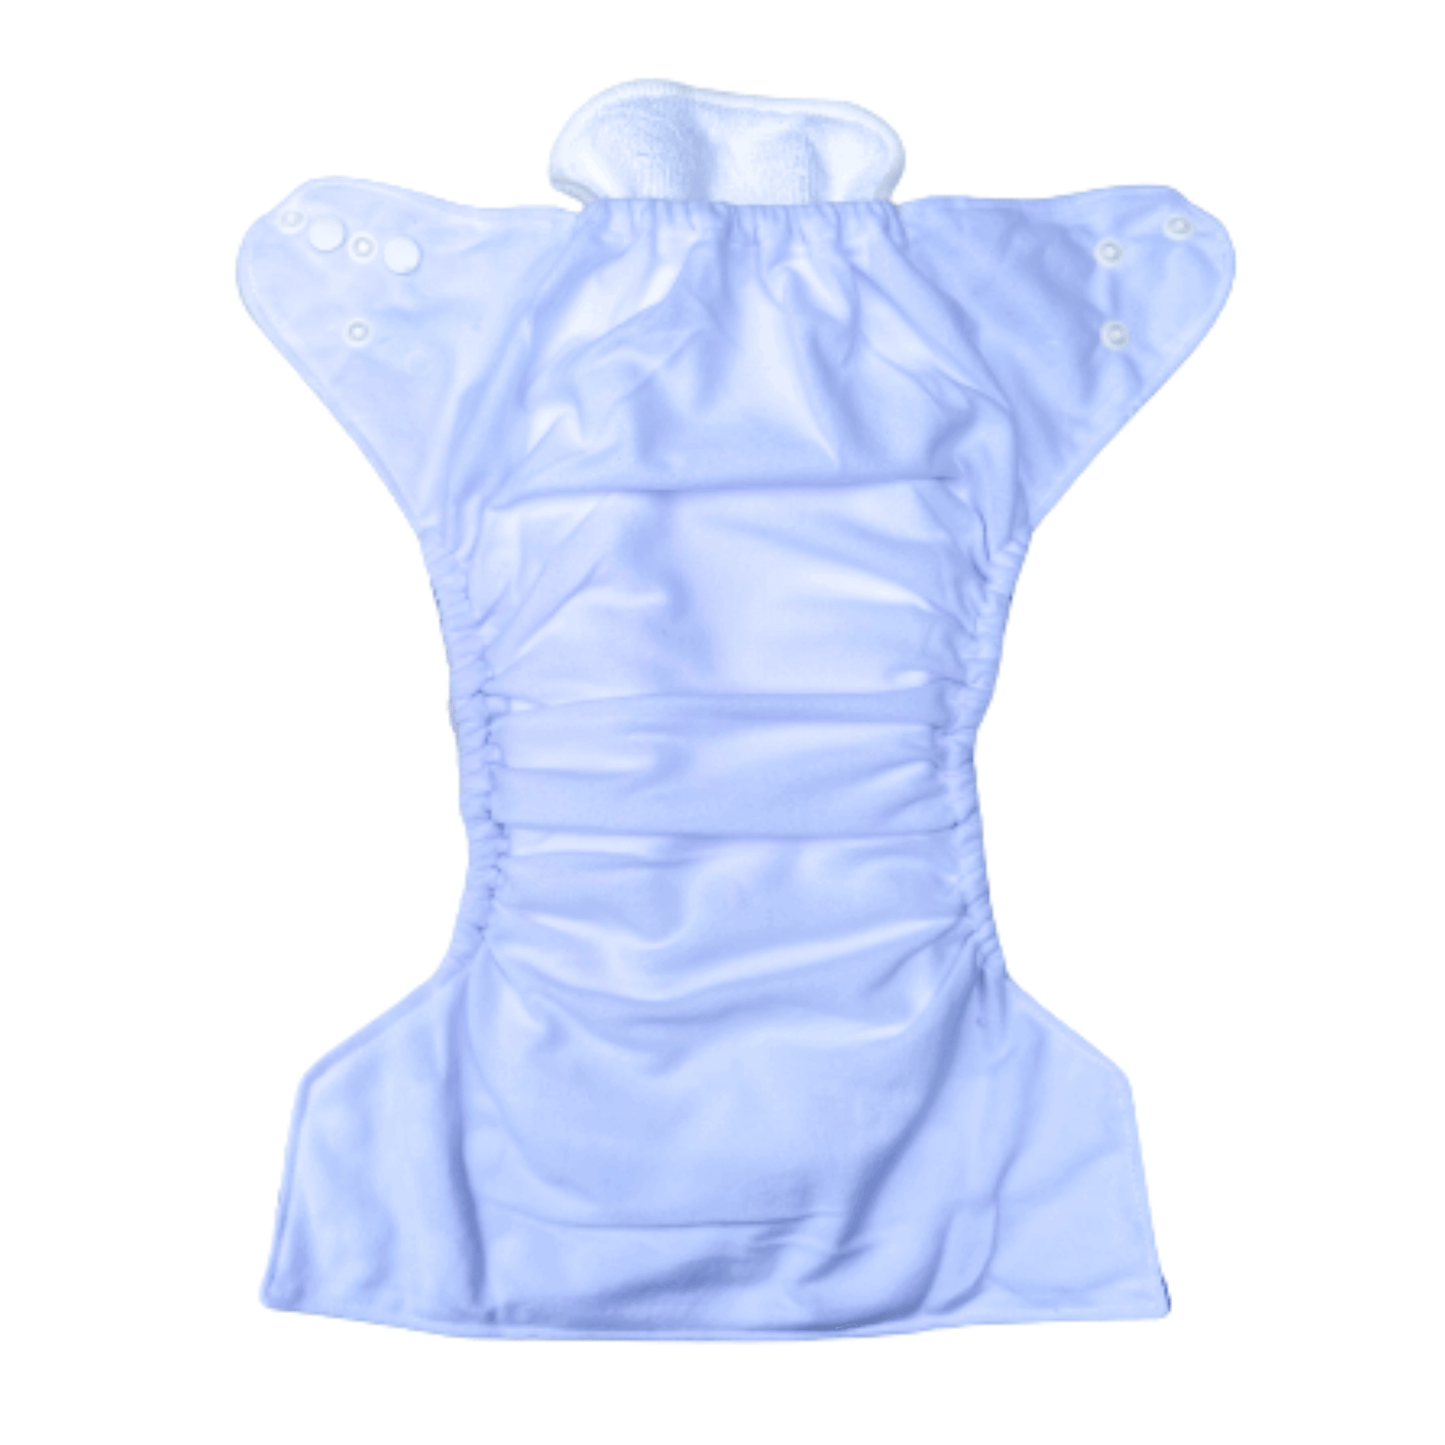 Reusable cotton cloth nappy 